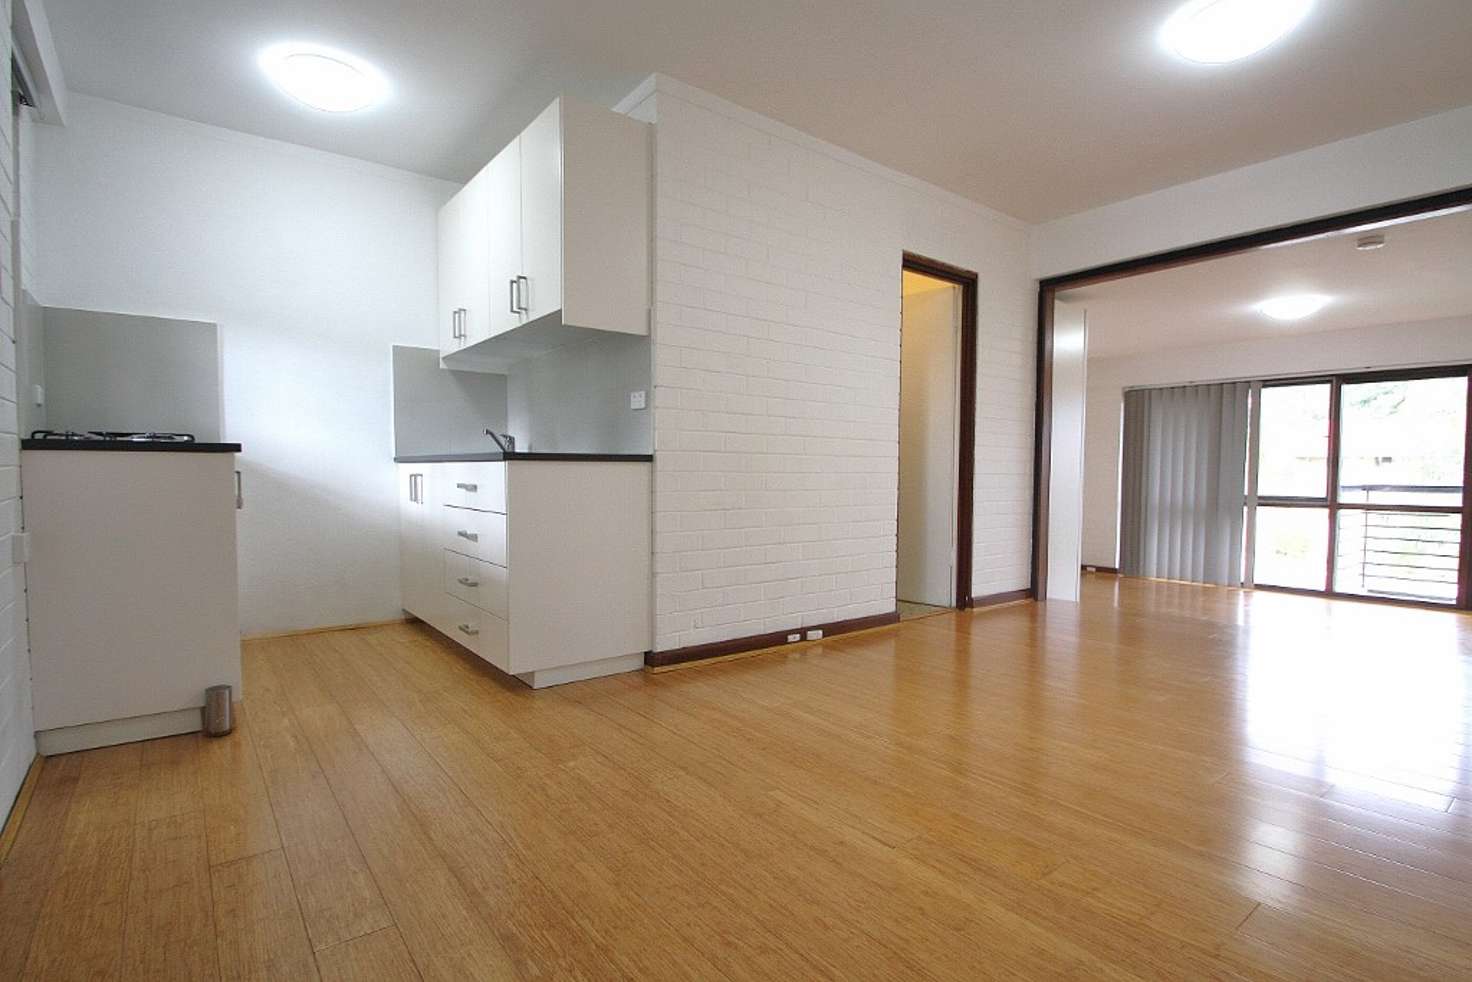 Main view of Homely apartment listing, 108/14 Mcnamara Way, Cottesloe WA 6011